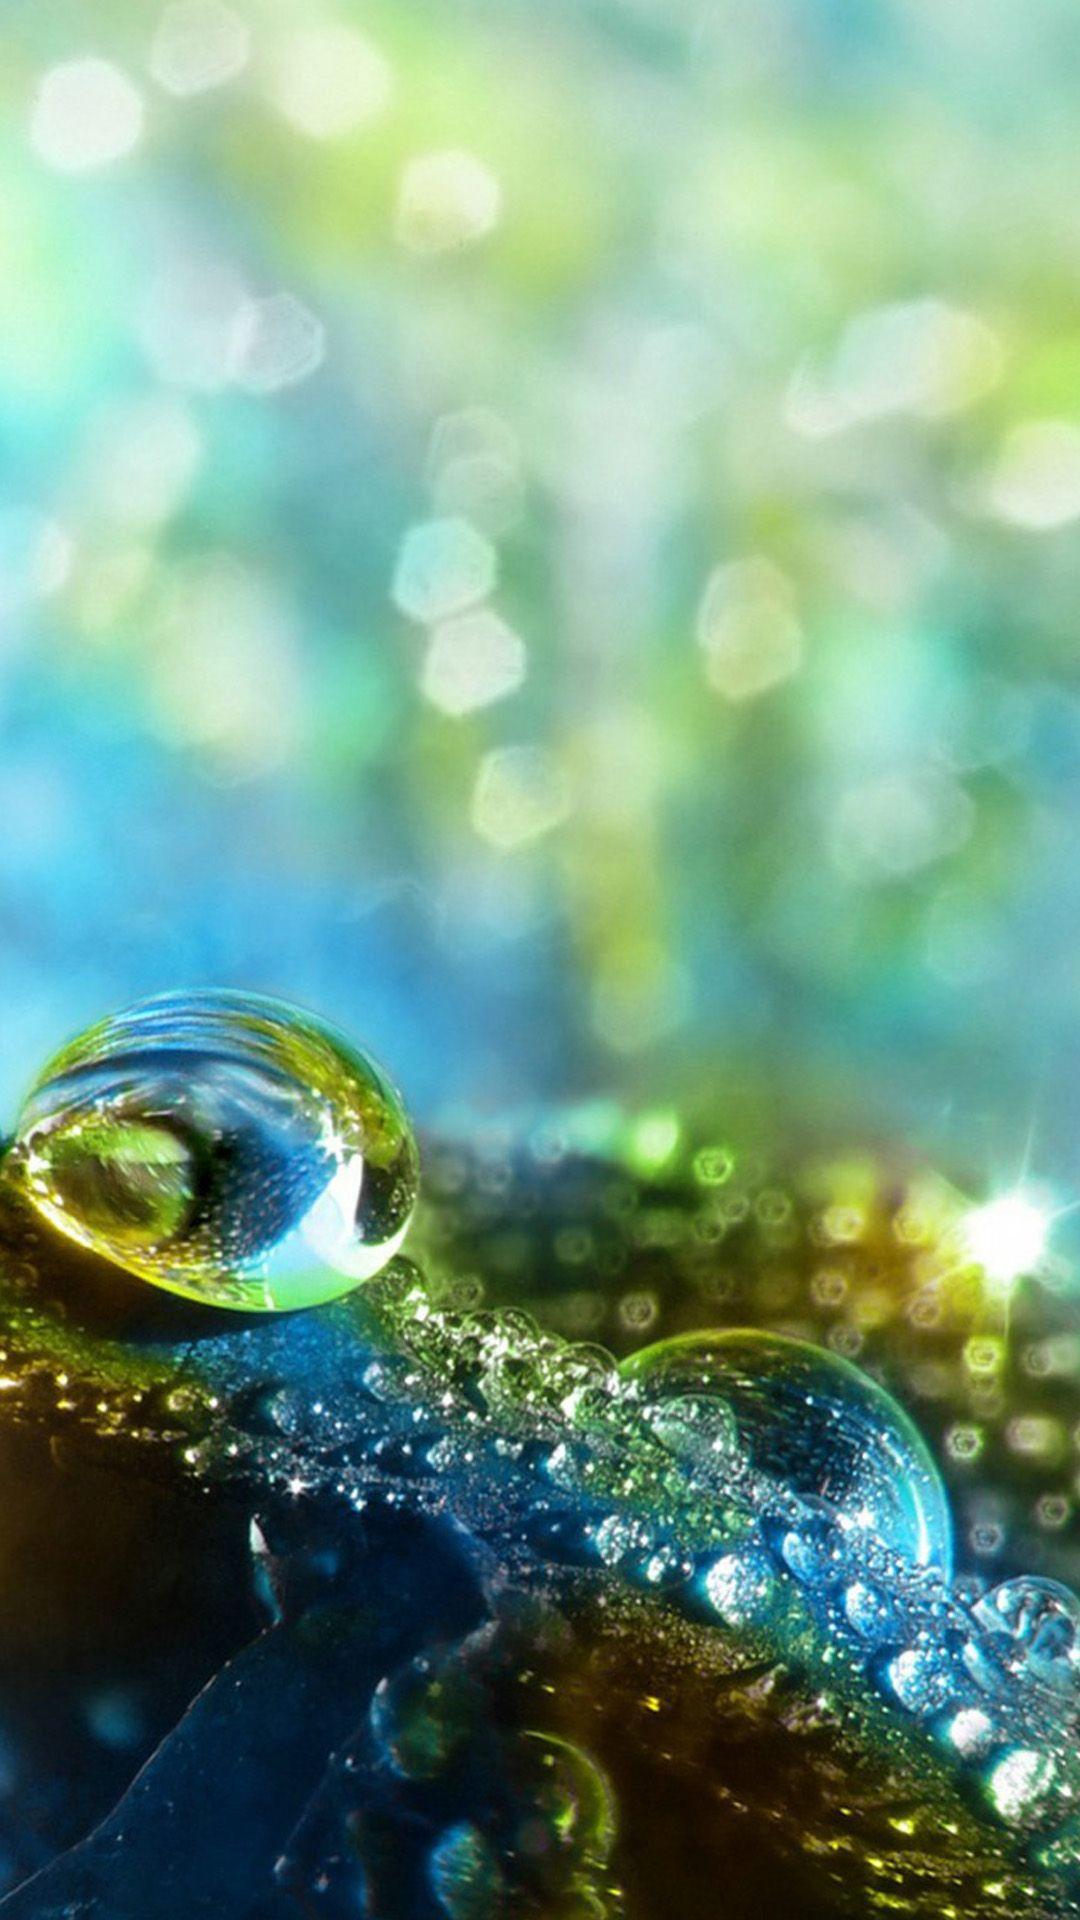 Green Water Drops Macro Samsung Galaxy S5 Android Wallpaper free